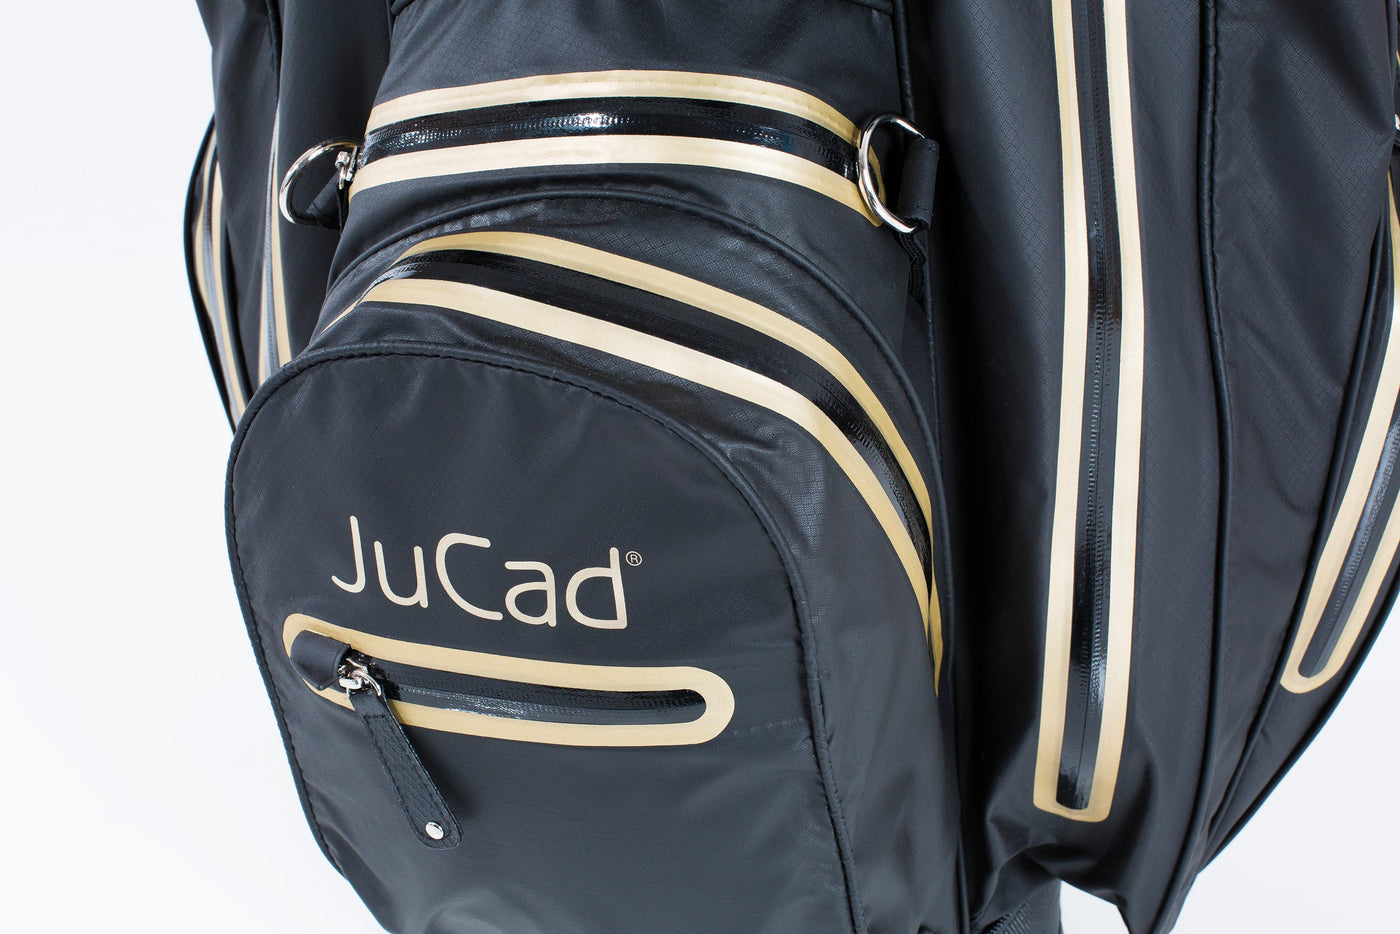 Sac de golf JuCad Aquastop - le léger imperméable | offre spéciale